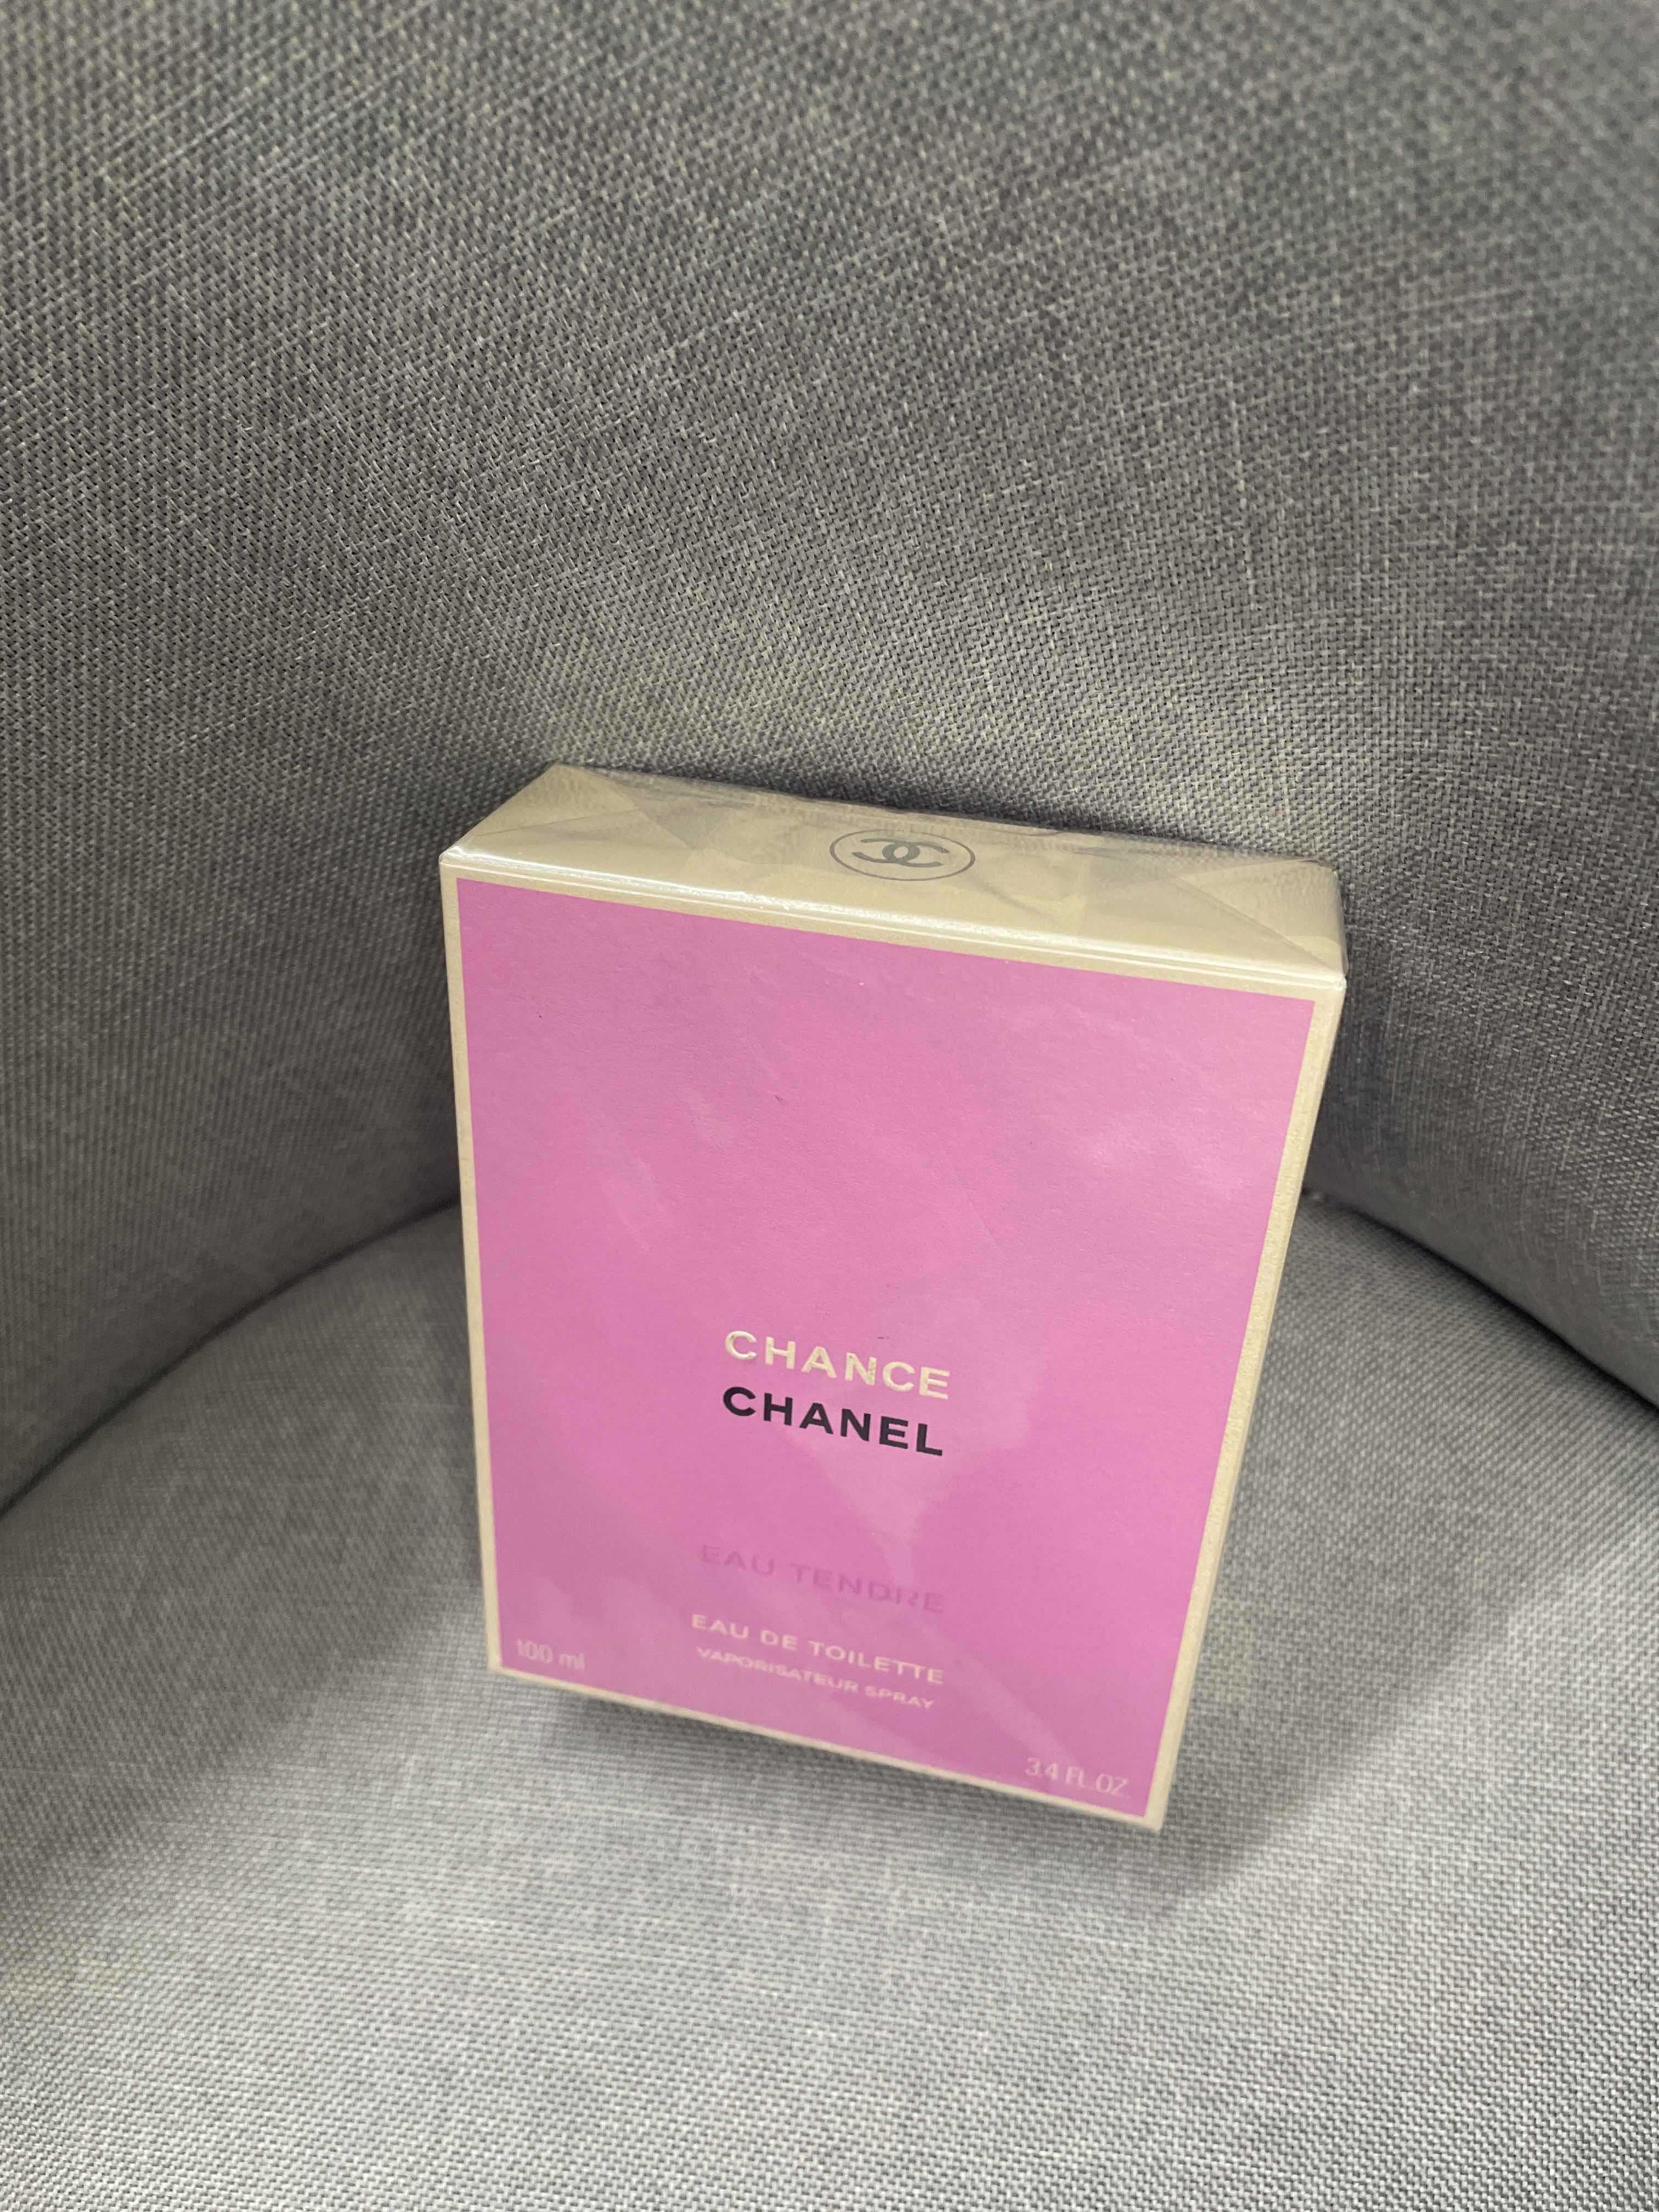 Oryginalna  perfumy Chanel w kolorze różowym,delikatna,nowa,nieotwarta